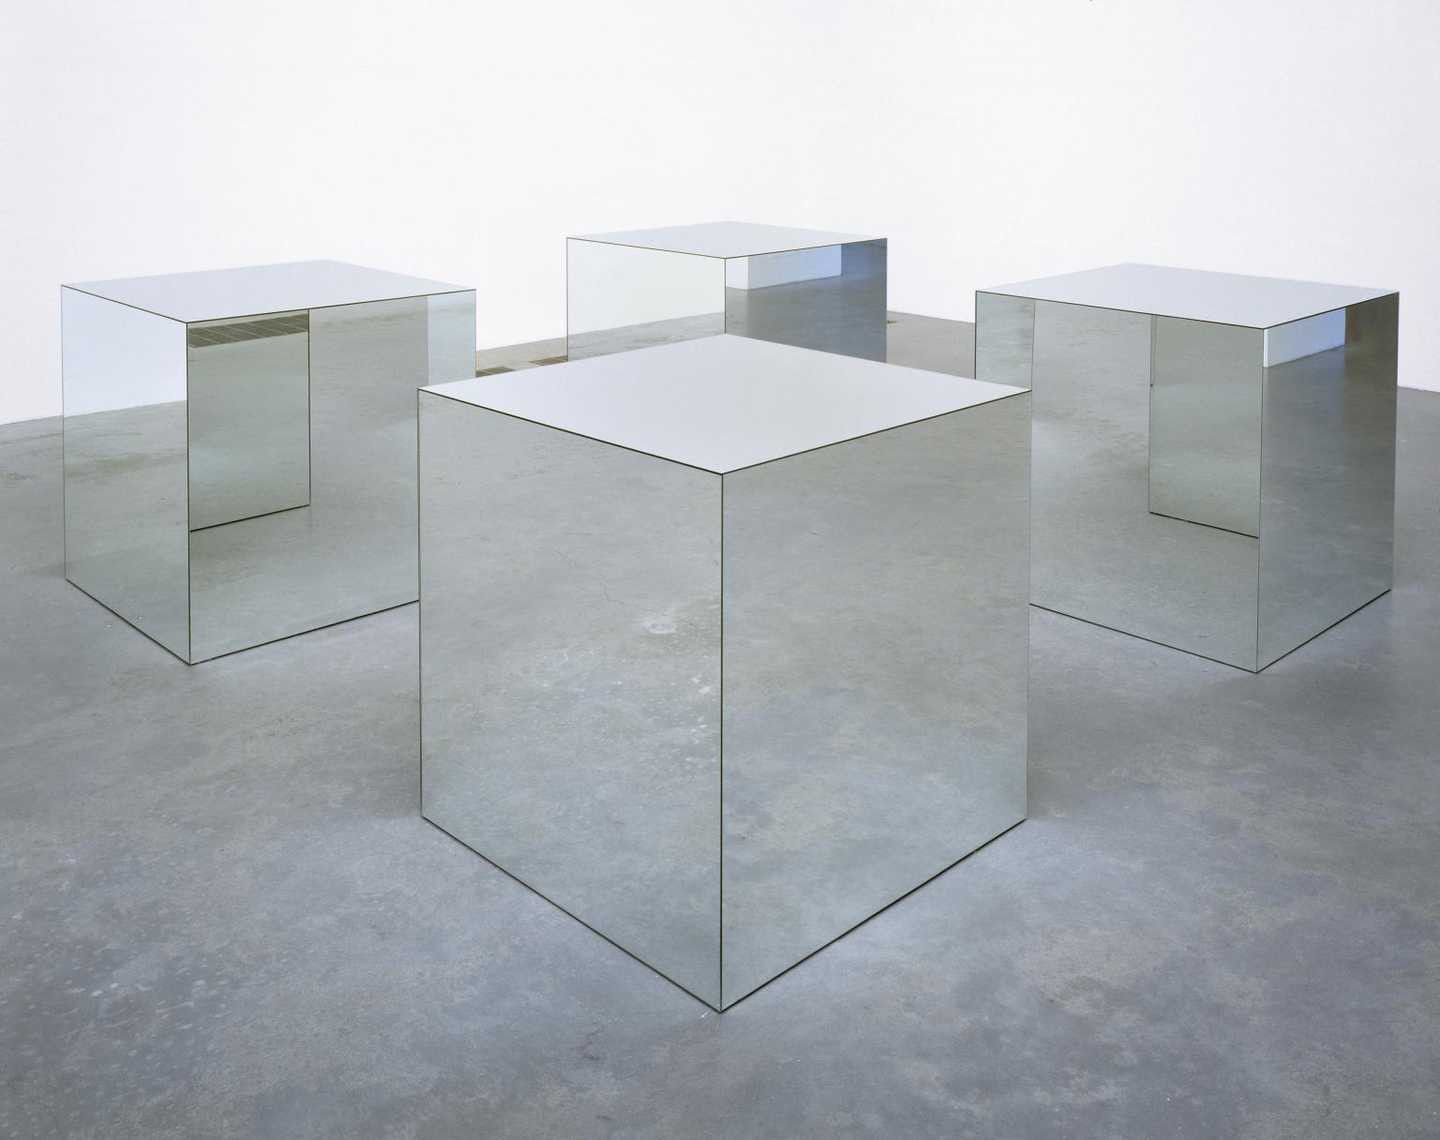 Voorbeeld van een minimalistische installatie door Robert Morris, Untitled (1965, gereconstrueerd 1971), Tate